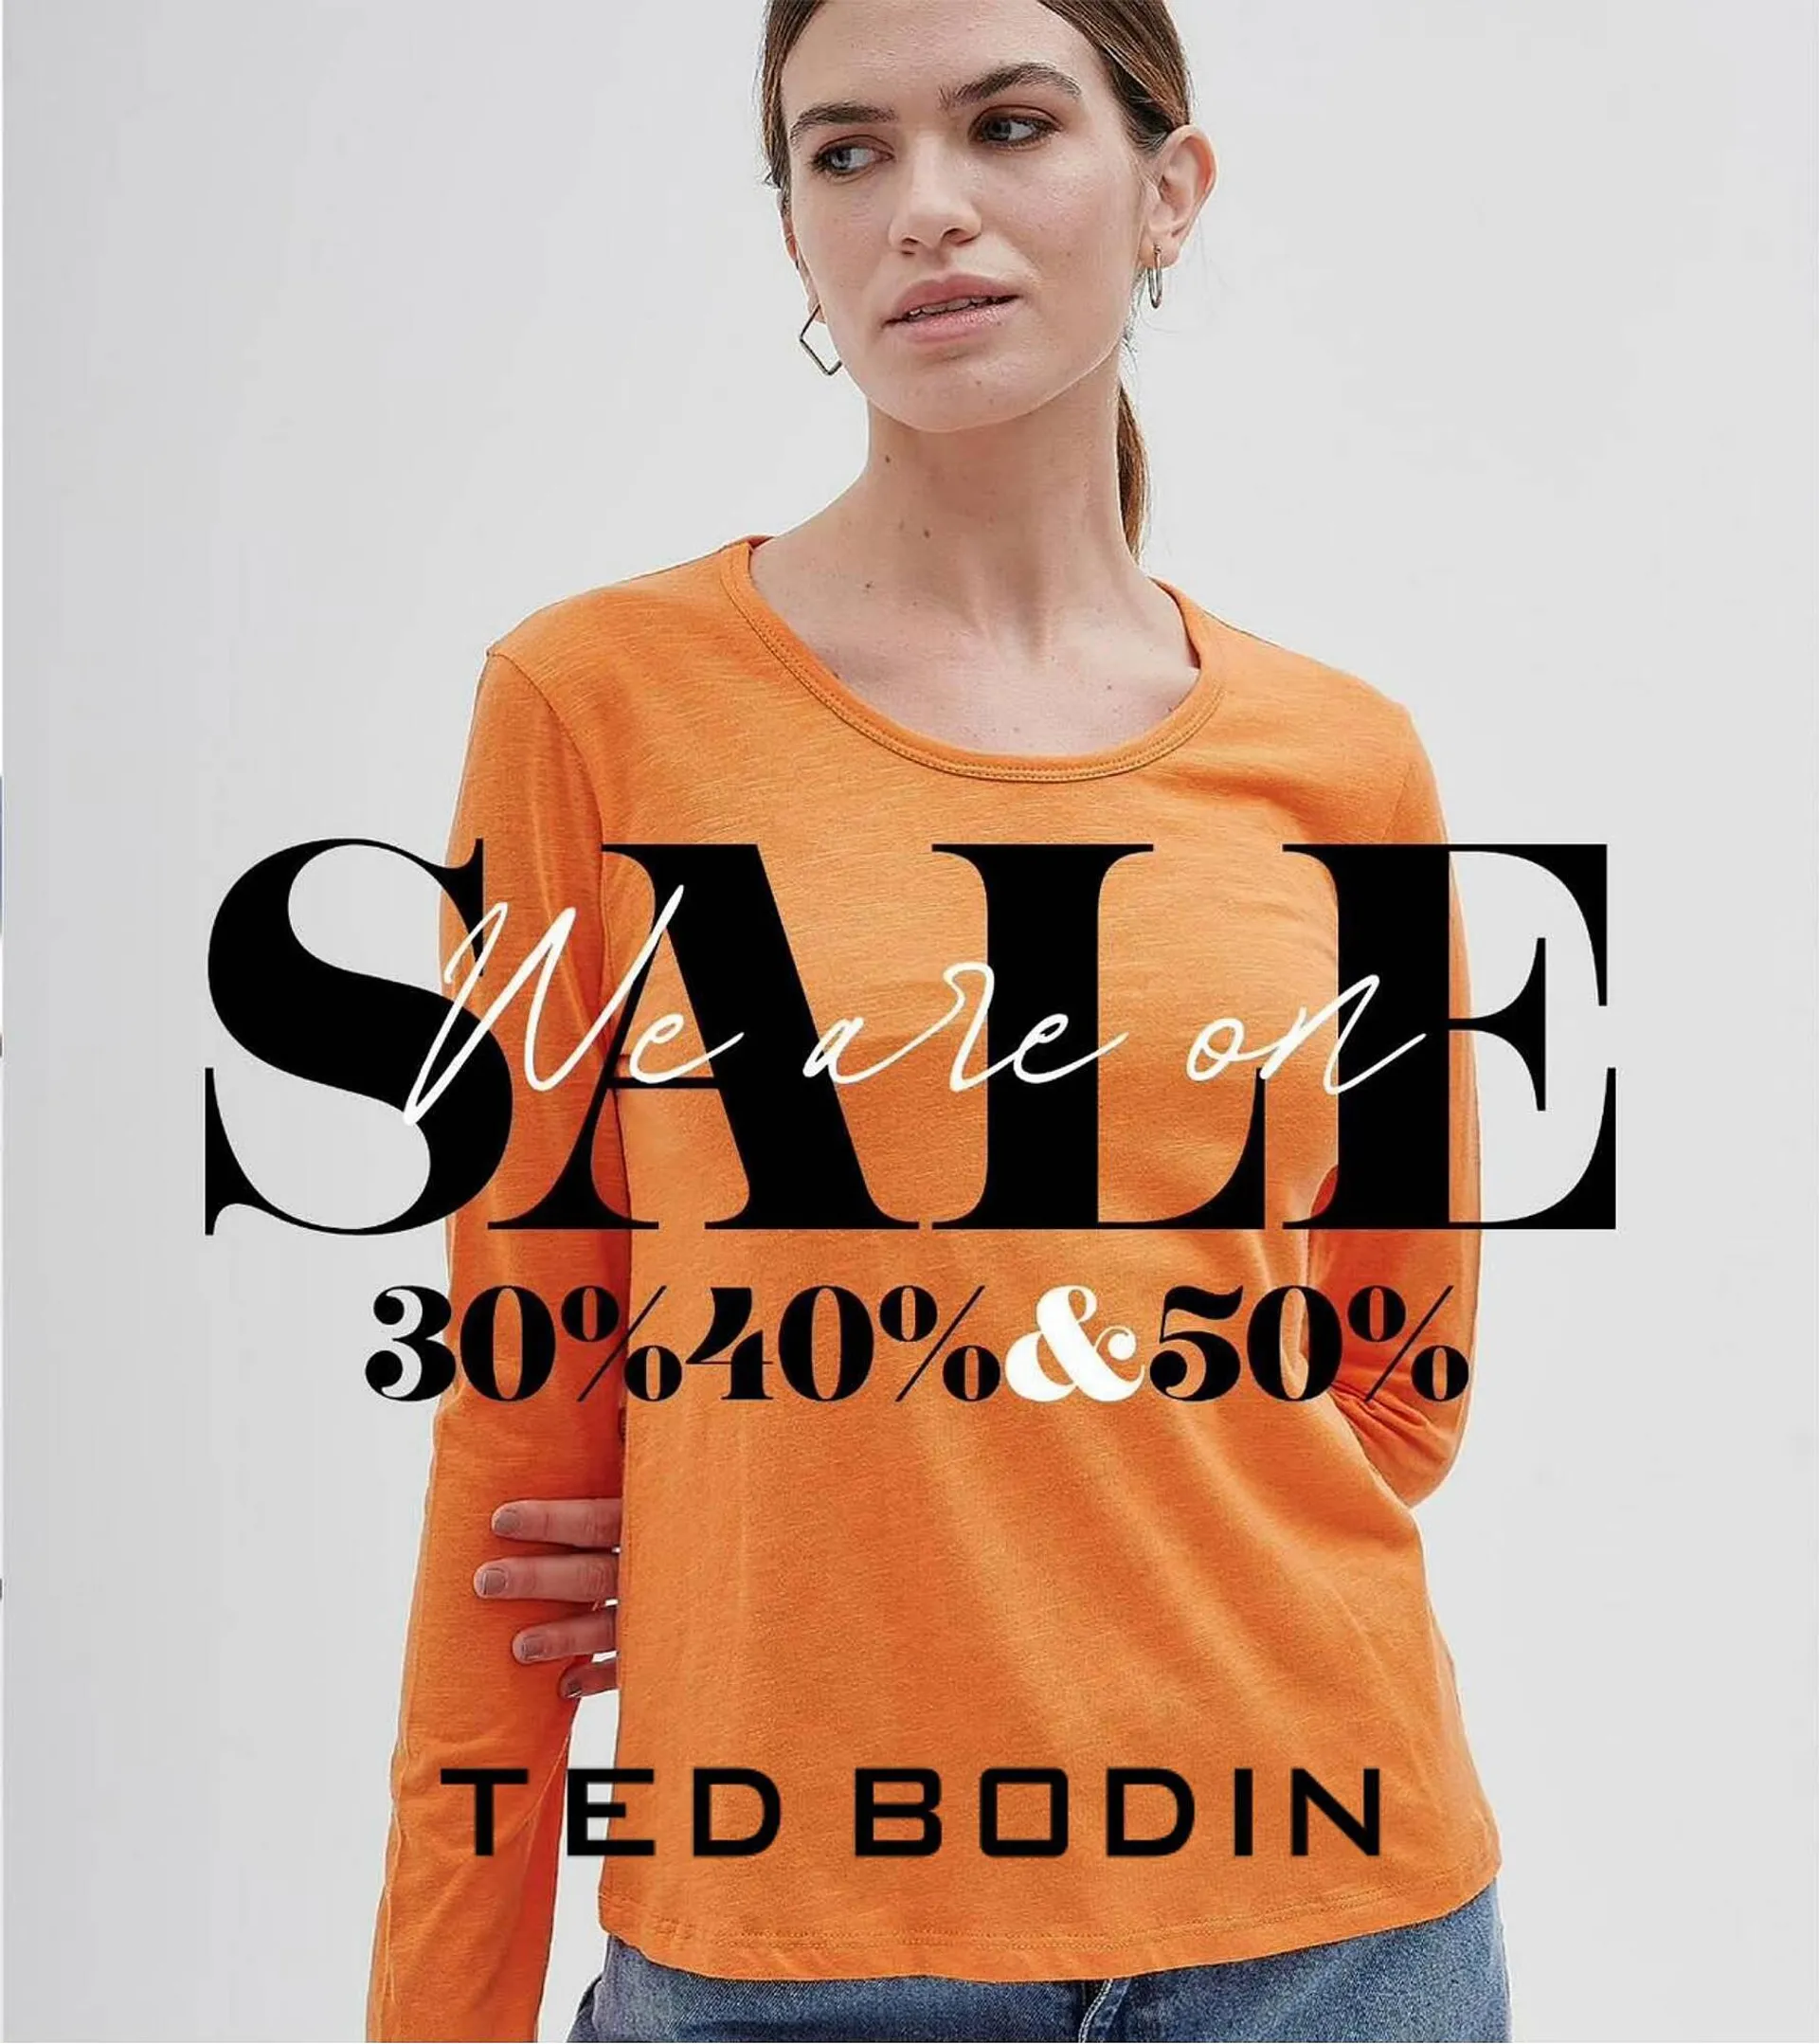 Catálogo Ted Bodin - 1